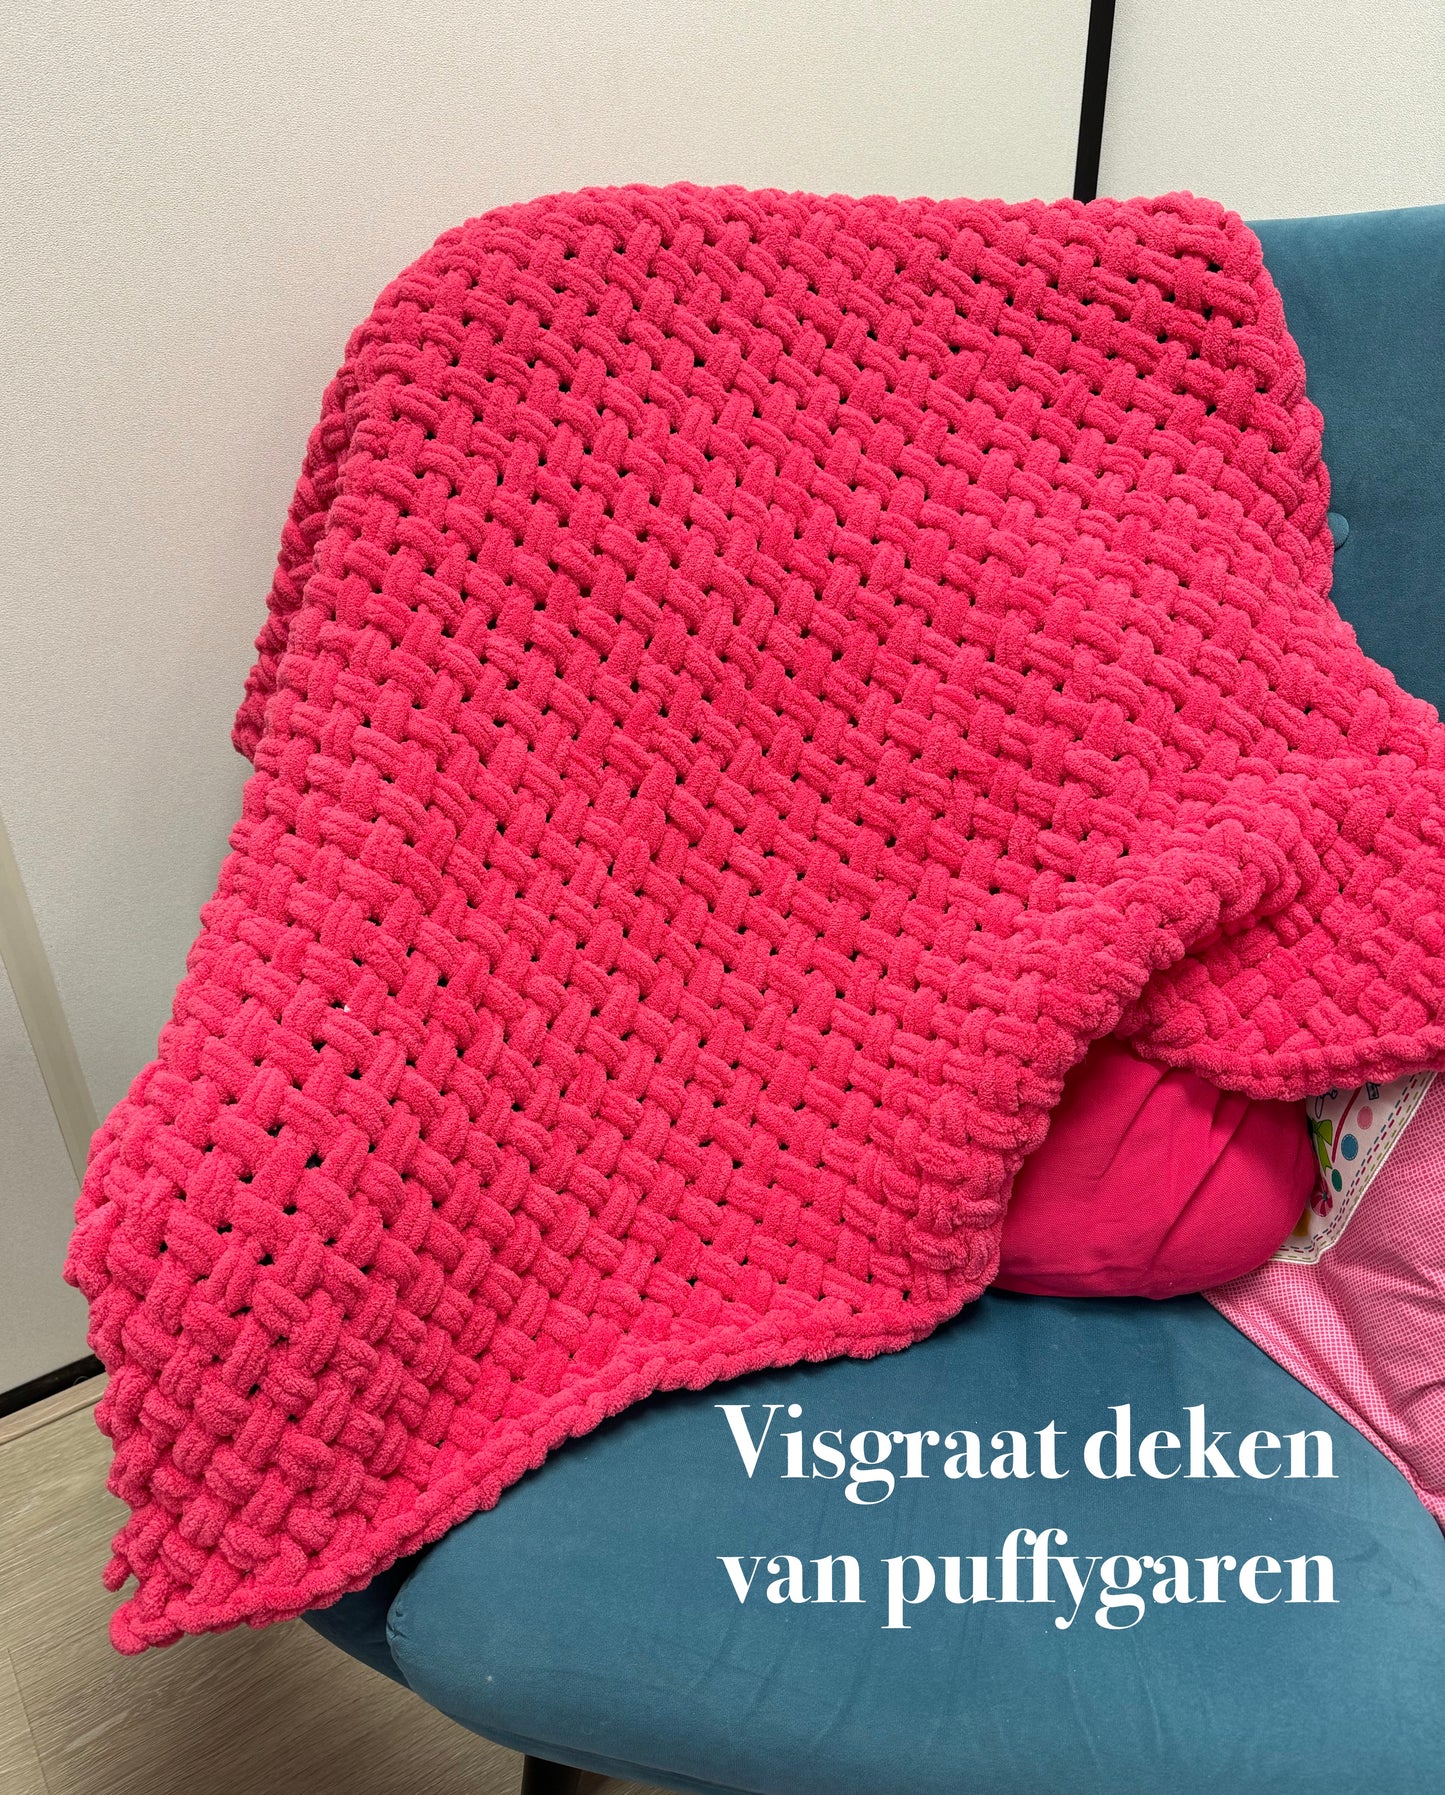 Workshop Puffy deken maken 9 maart